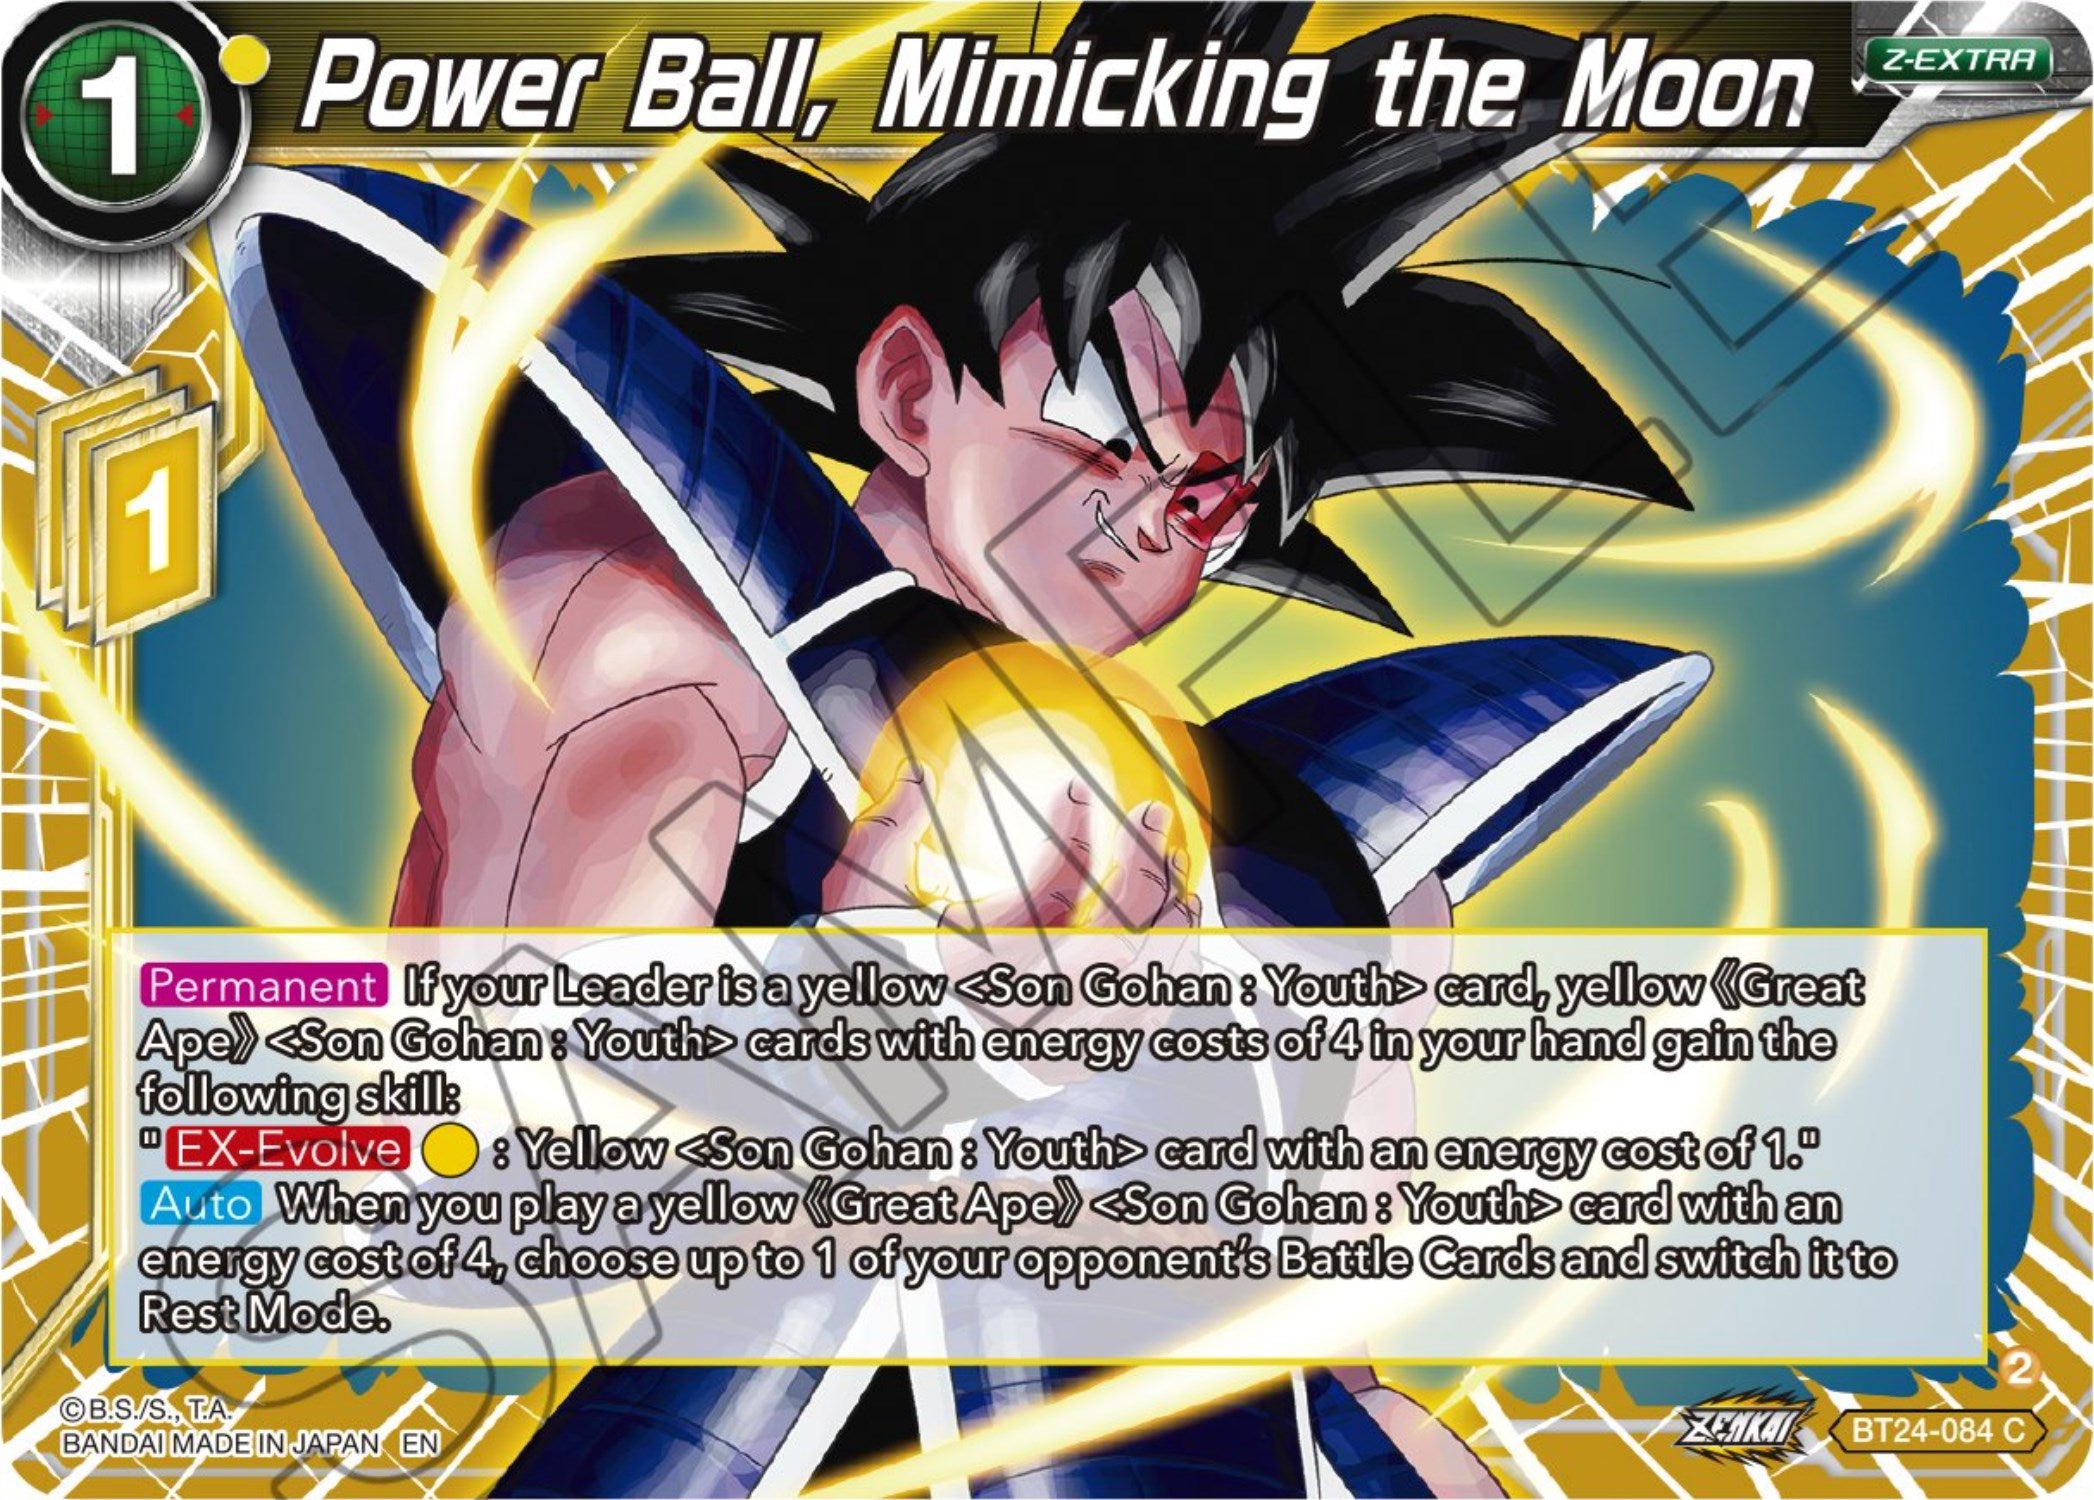 Power Ball, Mimicking the Moon (BT24-084) [Beyond Generations] | Event Horizon Hobbies CA